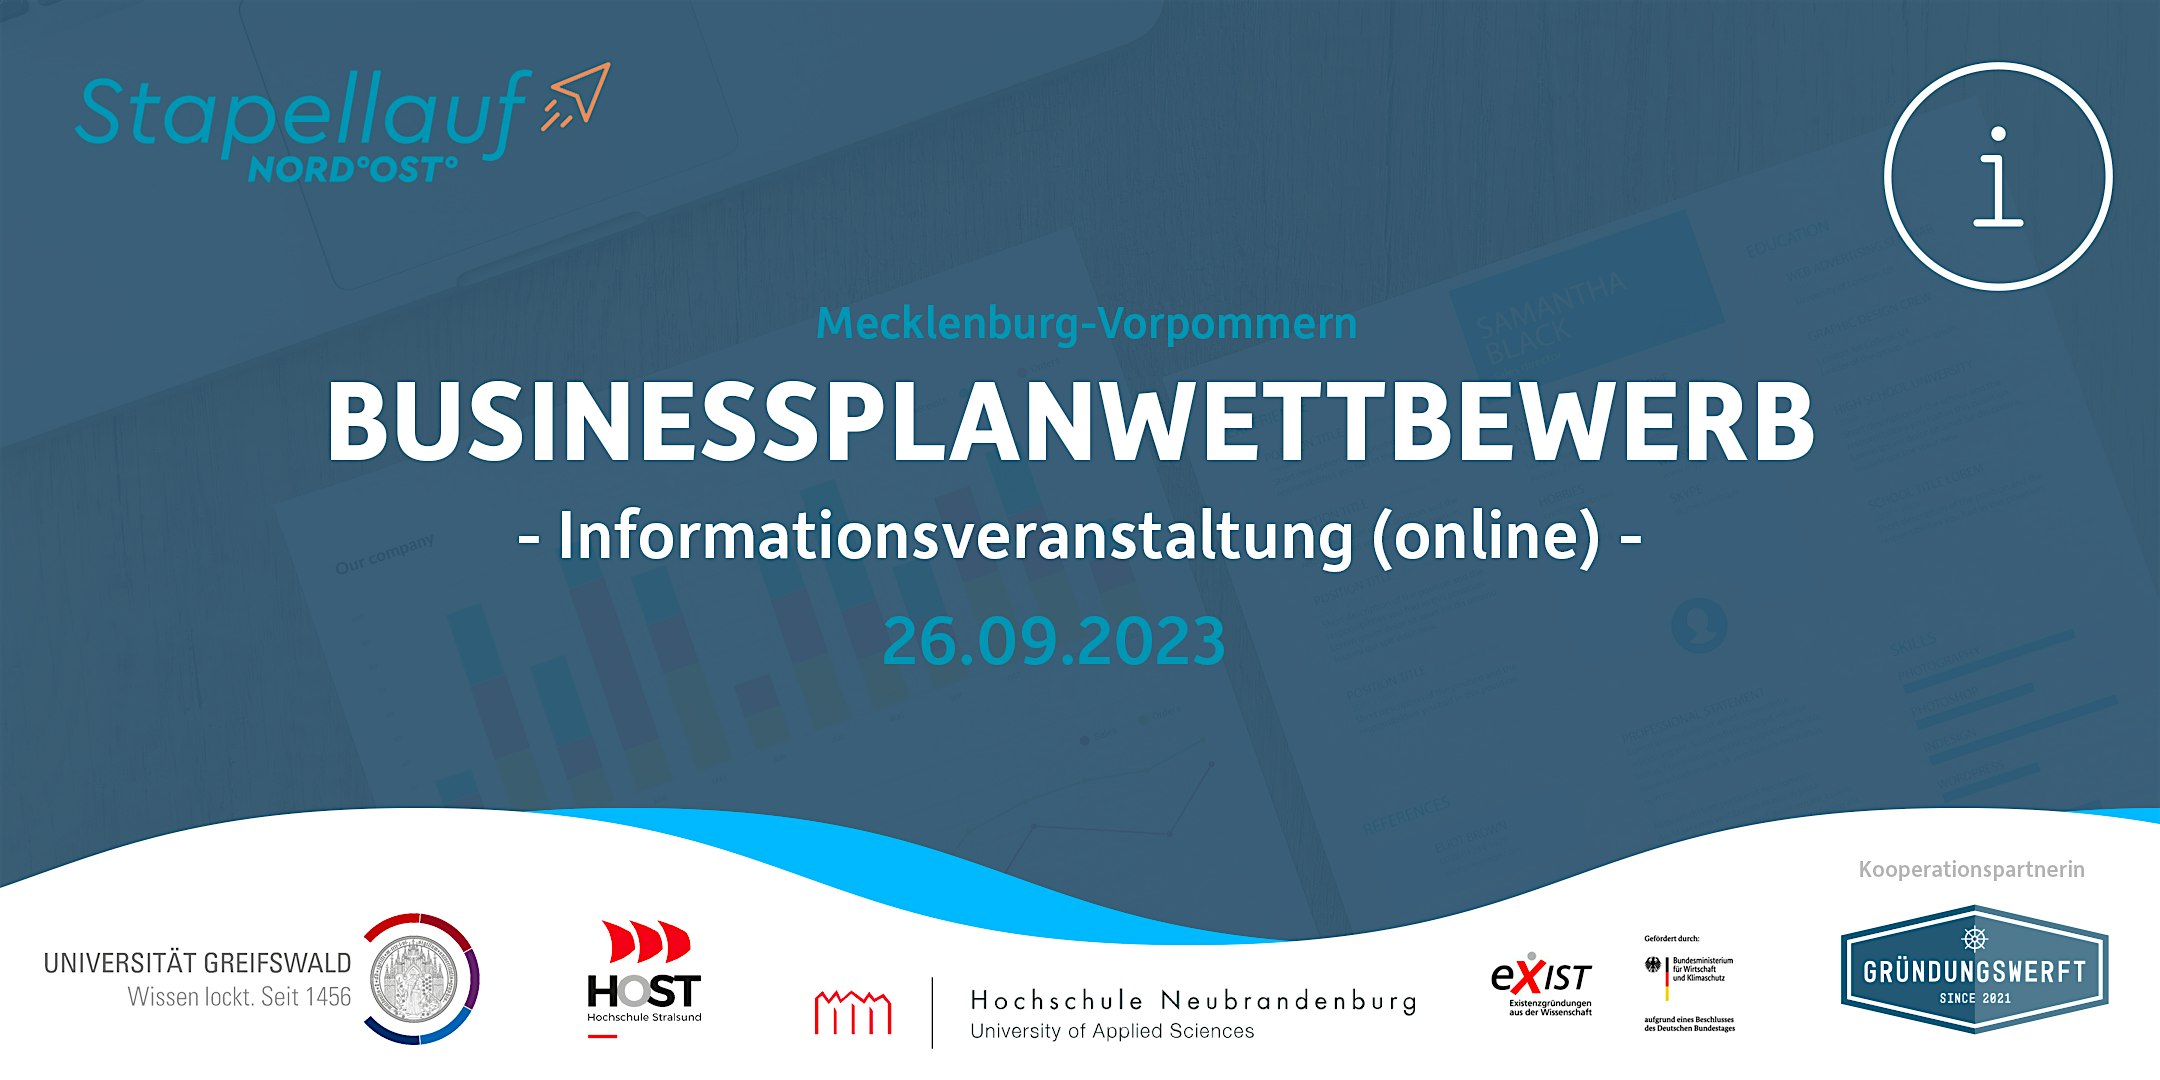 Veranstaltungsbild für die Veranstaltung Businessplanwettbewerb des Landes - Informationsveranstaltung